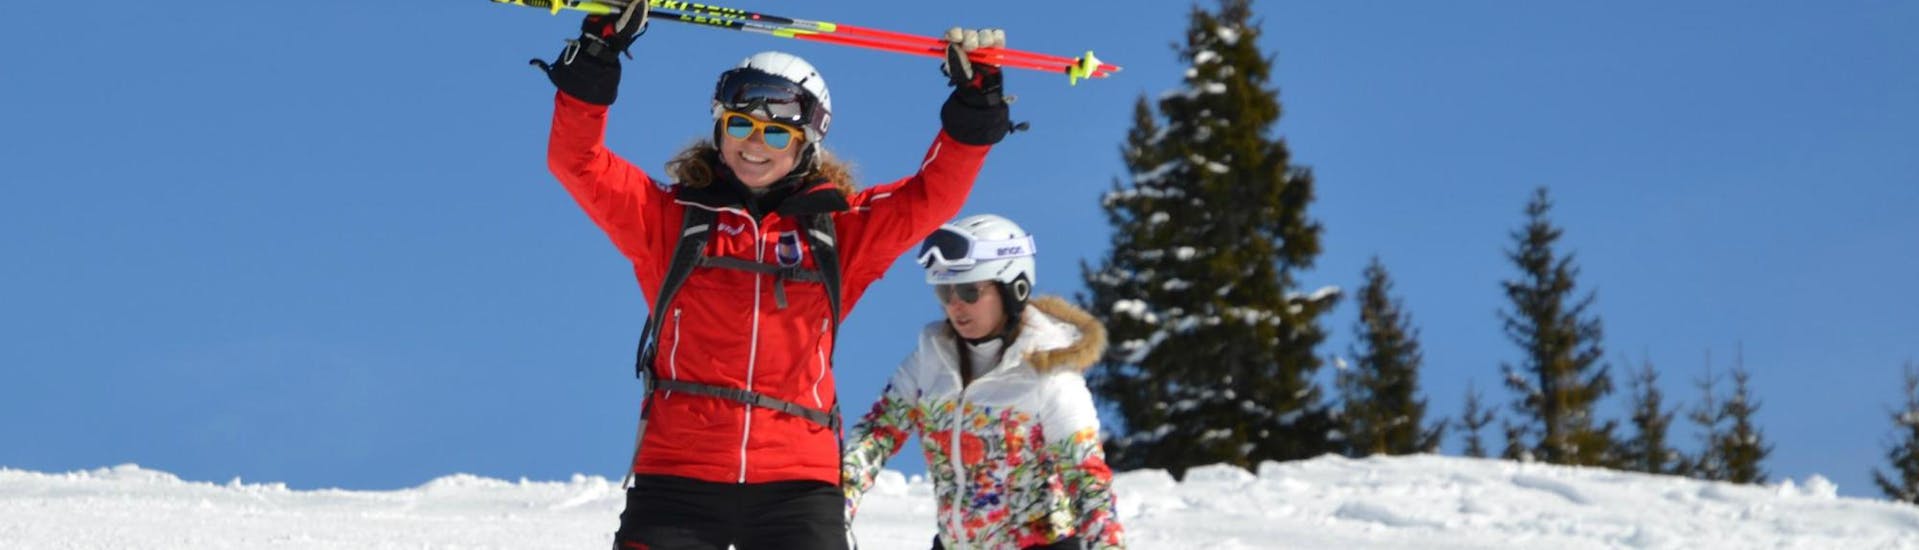 Dans les Cours de ski pour Adultes - Première expérience, le moniteur de l'école de ski Skischule Kitzbühel Rote Teufel montre à un débutant les bases du chasse-neige.